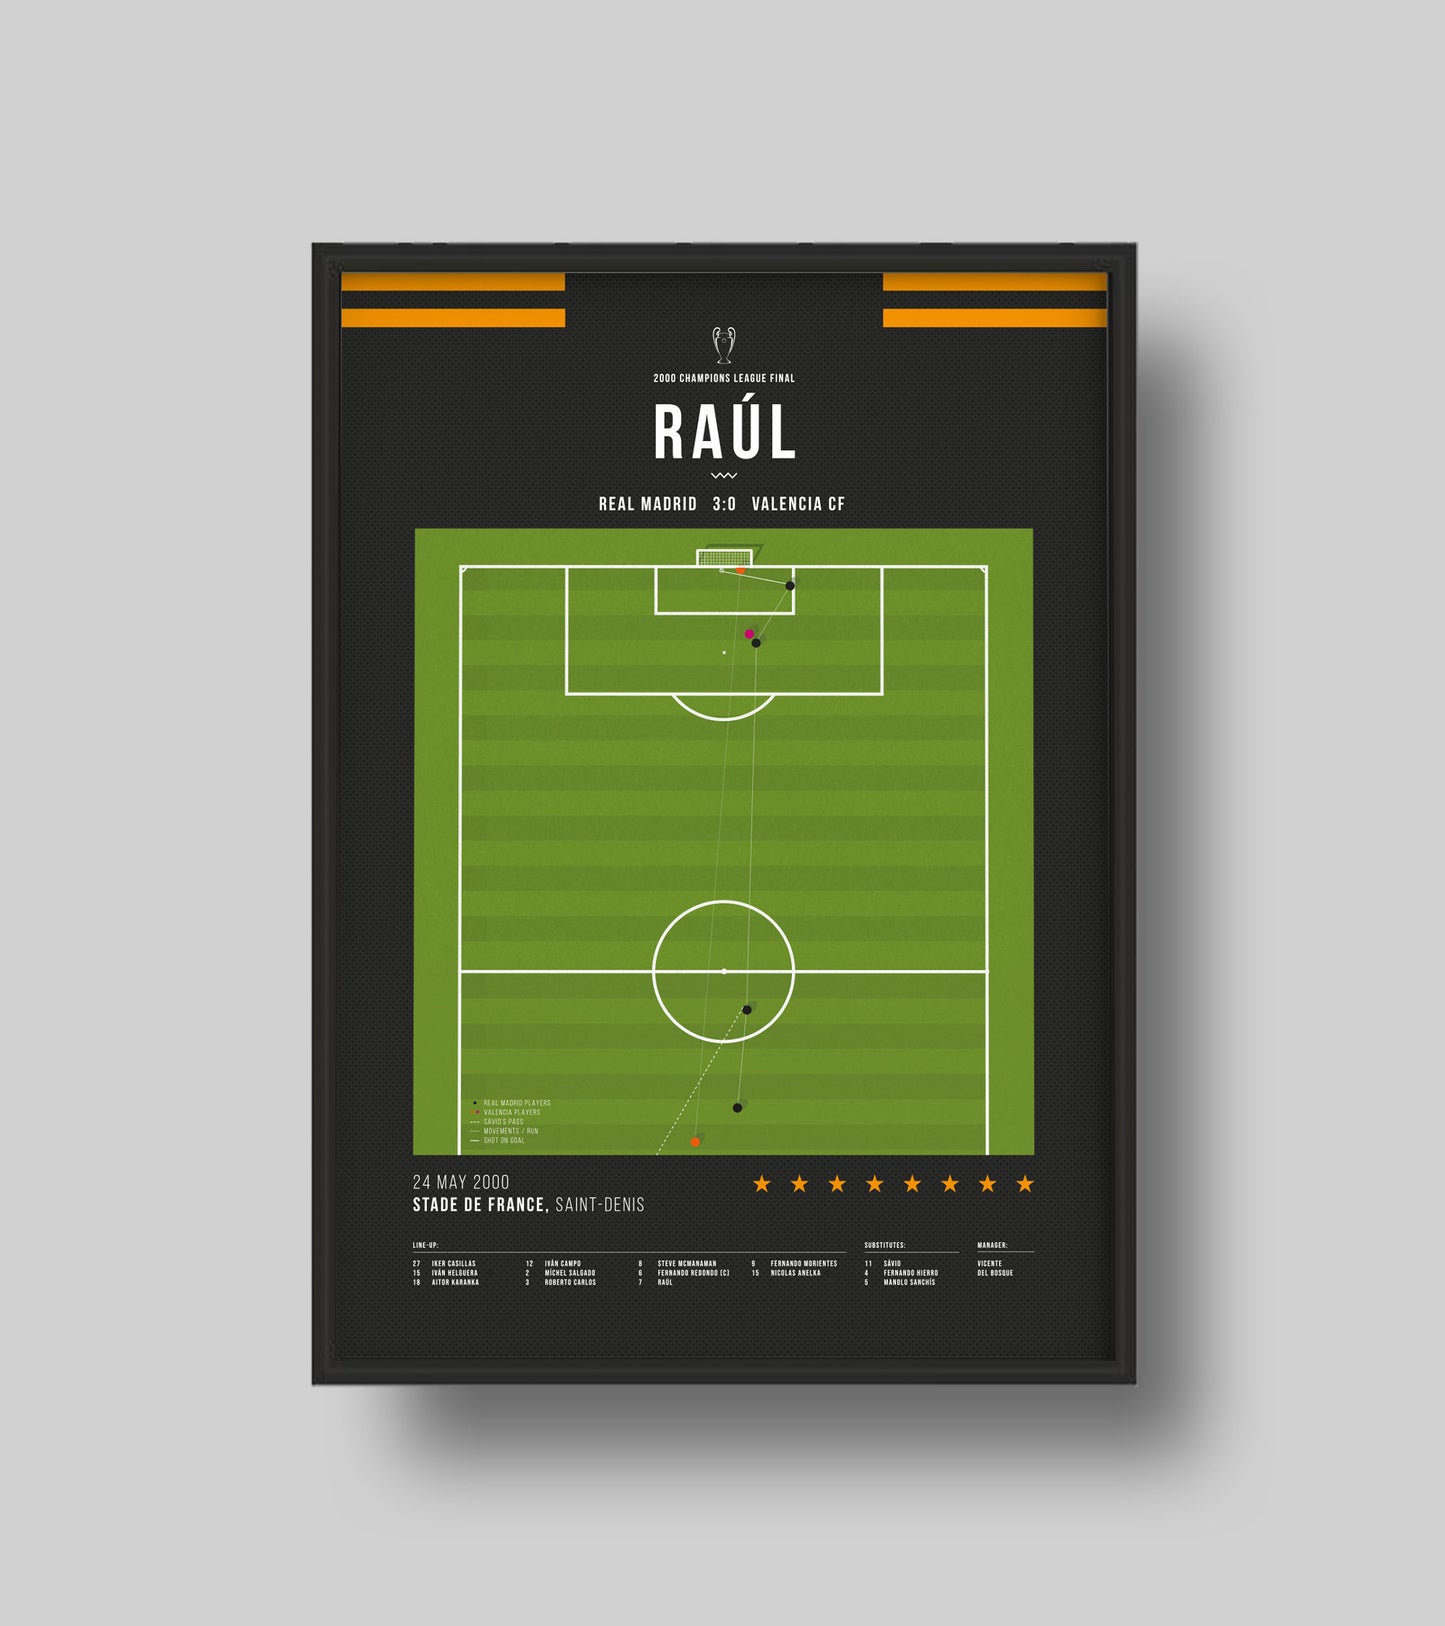 Le but de Raul lors de la victoire de l'UCL 2000 contre Valence